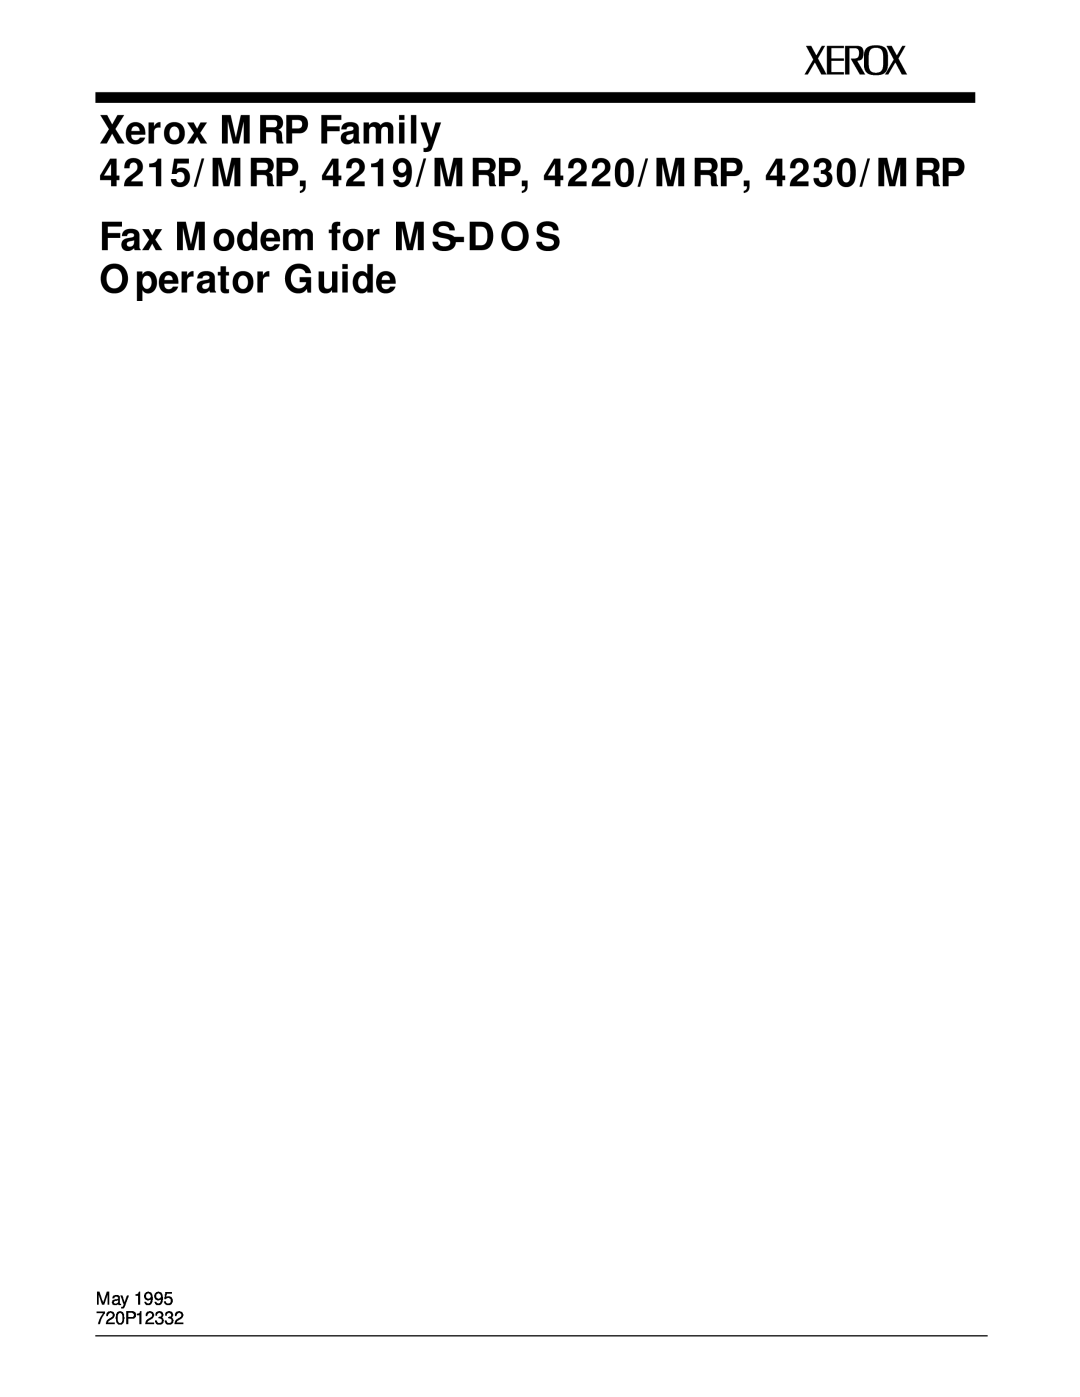 Xerox manual Xerox MRP Family, 4215/MRP, 4219/MRP, 4220/MRP, 4230/MRP, Fax Modem for Macintosh Operator Guide 